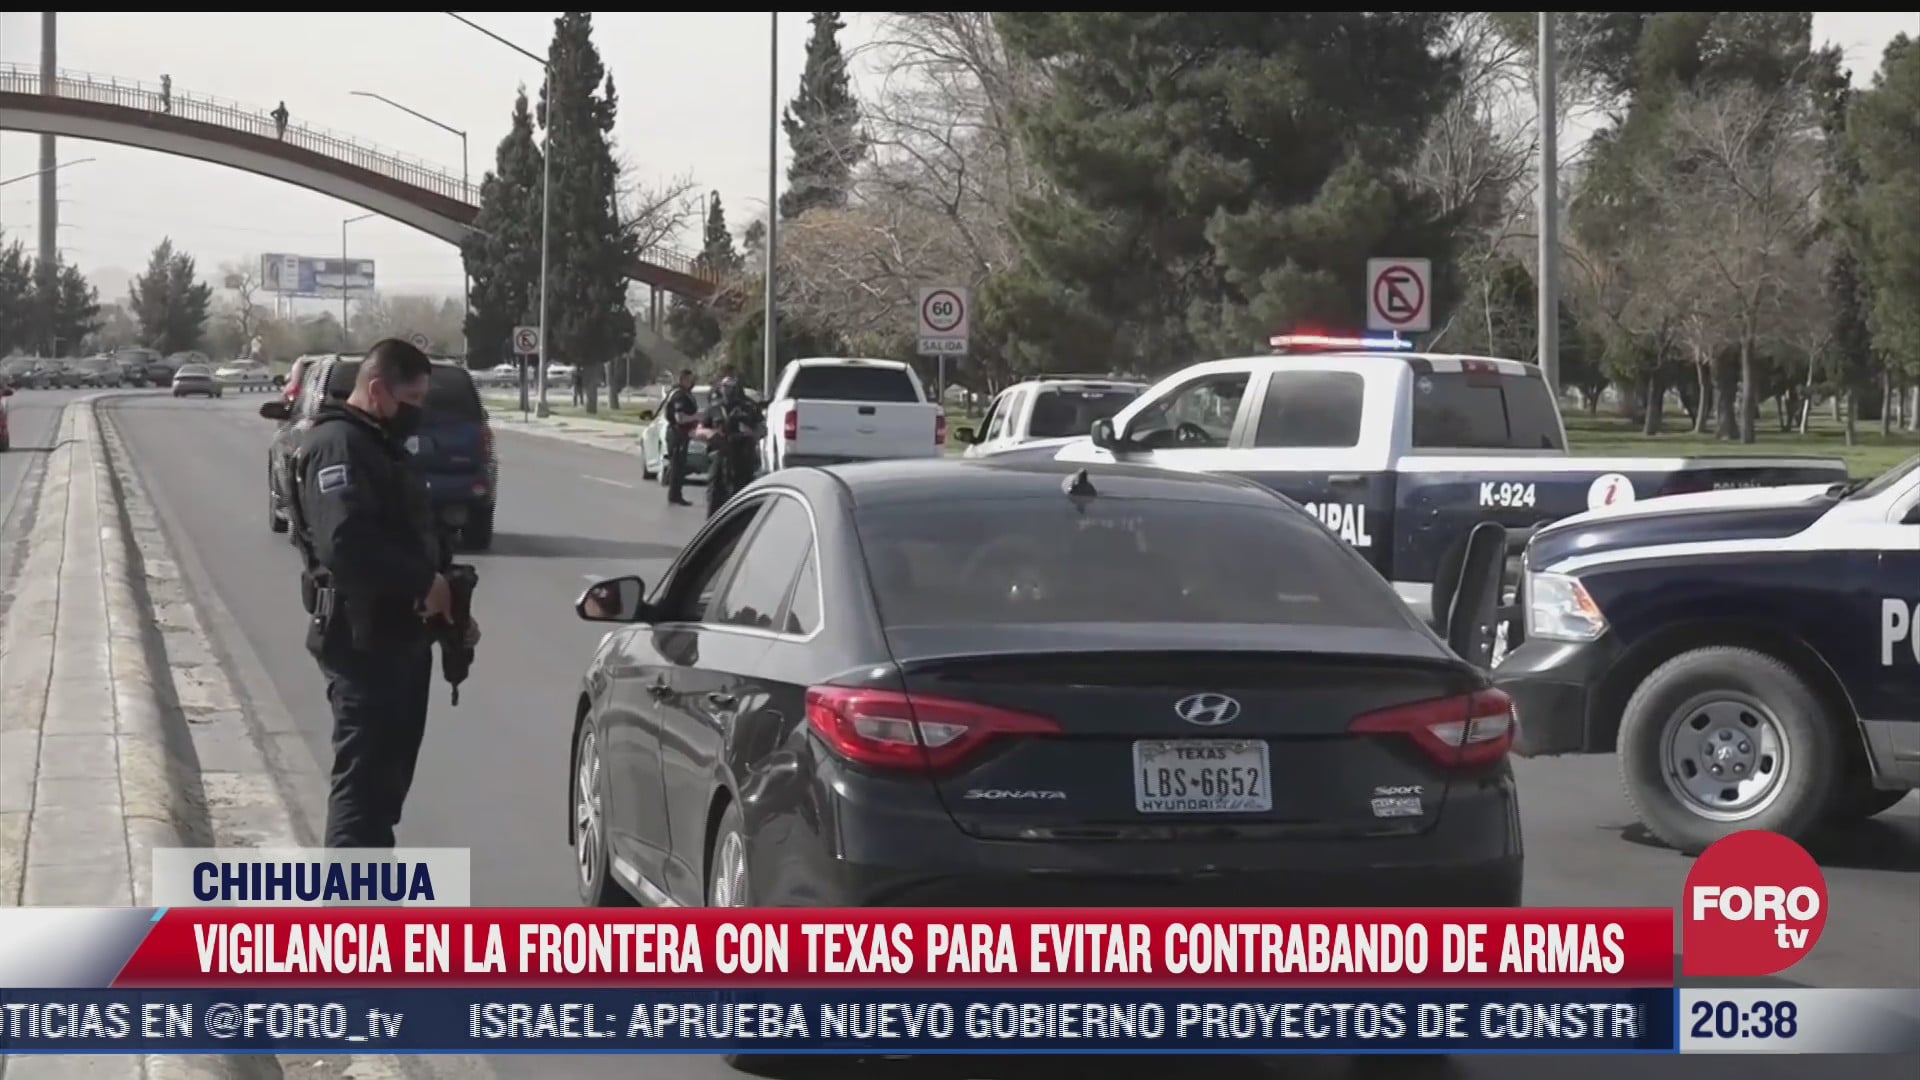 vigilan frontera con texas para evitar contrabando de armas en chihuahua